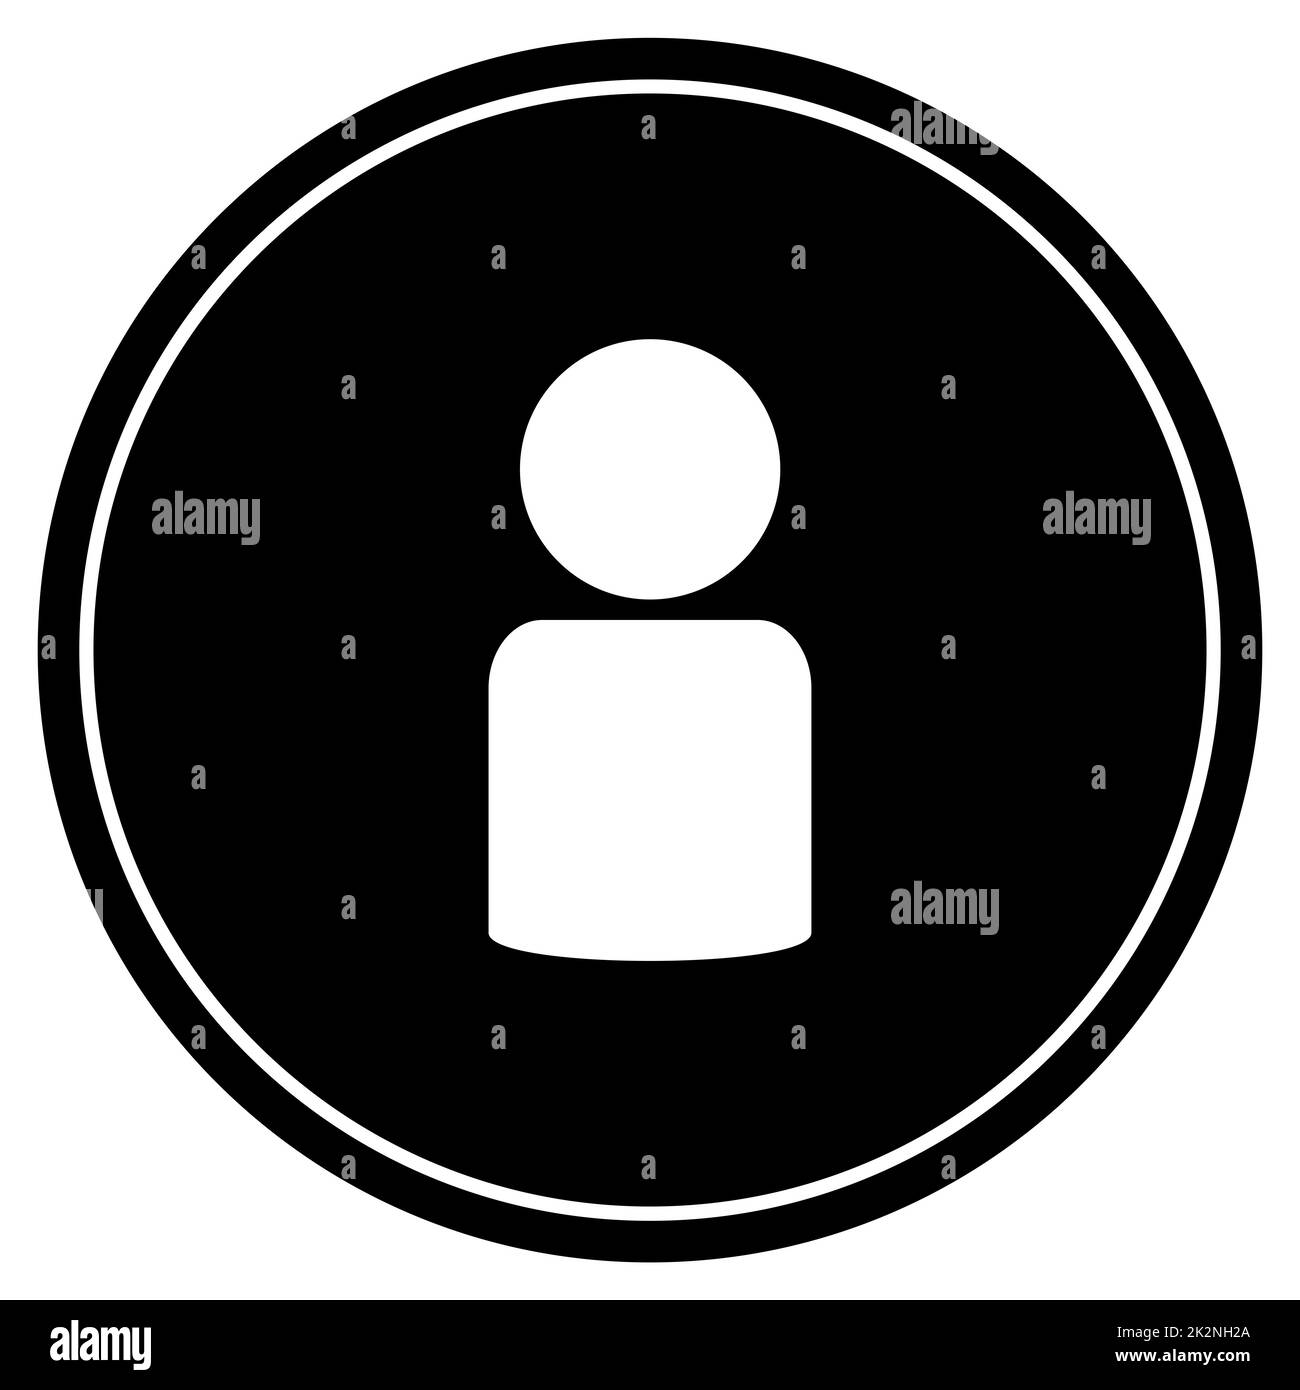 Simbolo dell'account utente sul pulsante nero con cornice bianca Foto Stock